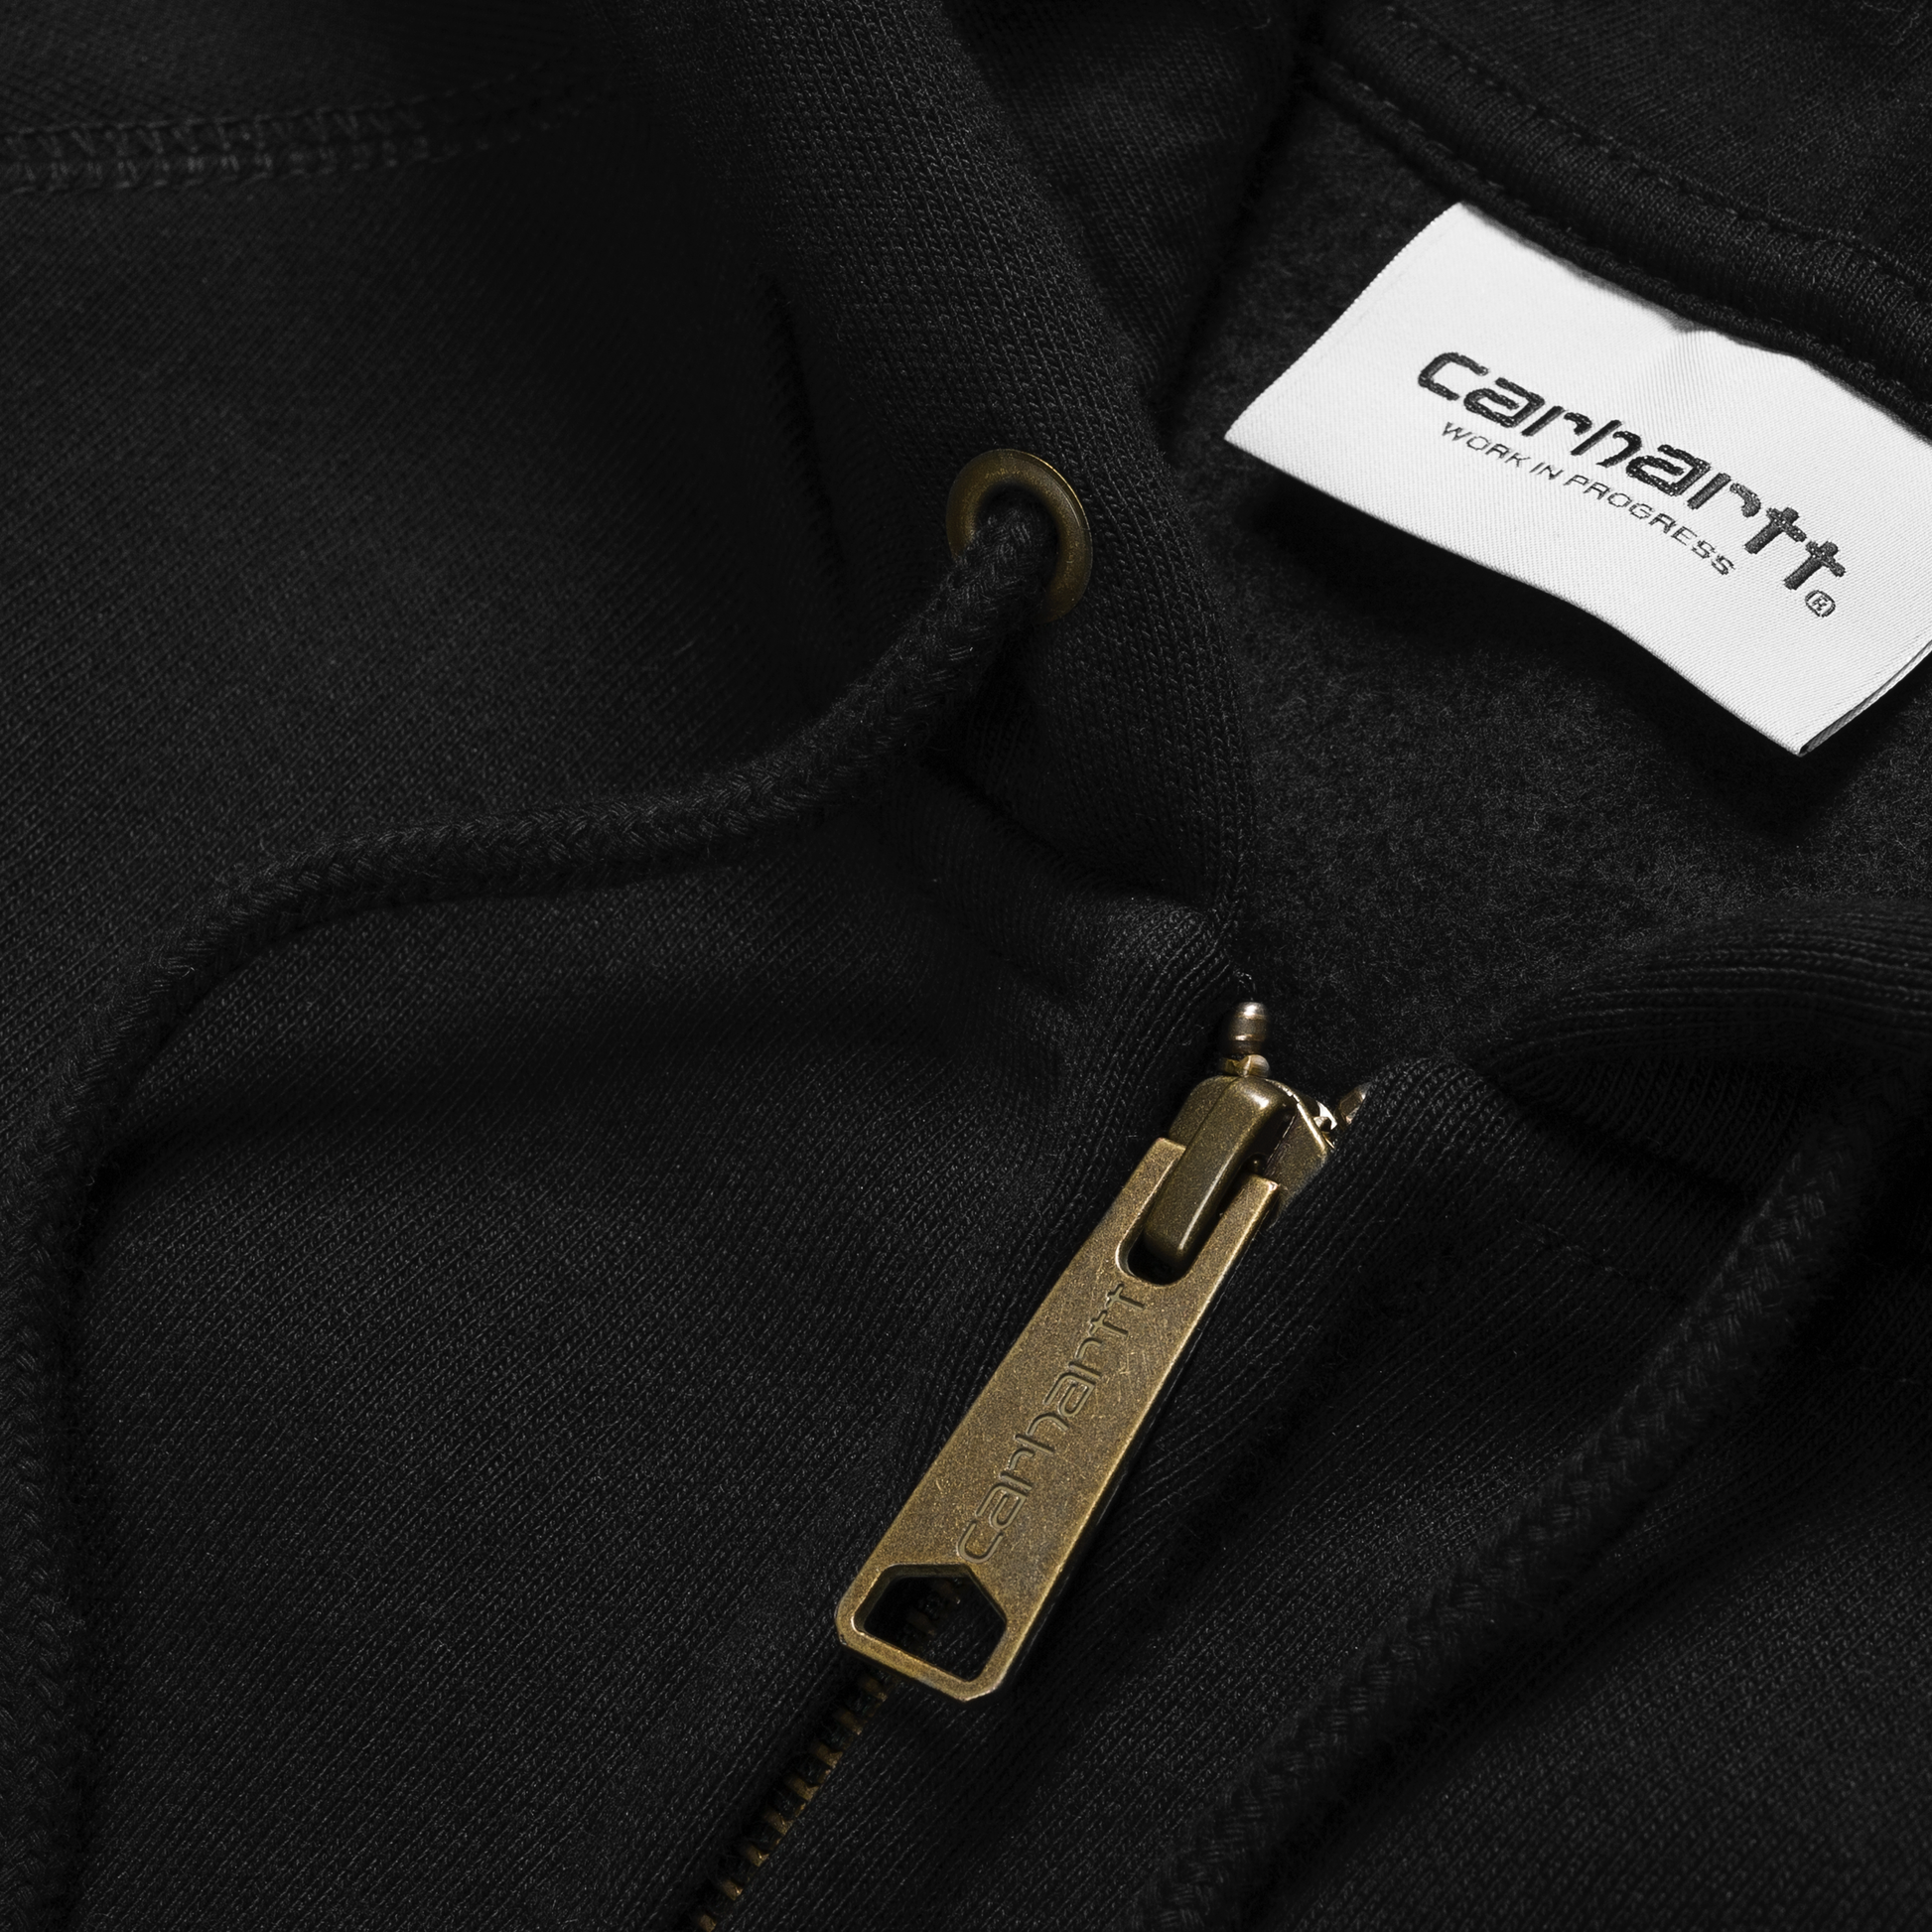 Carhartt WIP Hooded Chase Jacket em preto com logo bordado na manga em dourado. Foto de detalhe do fecho.